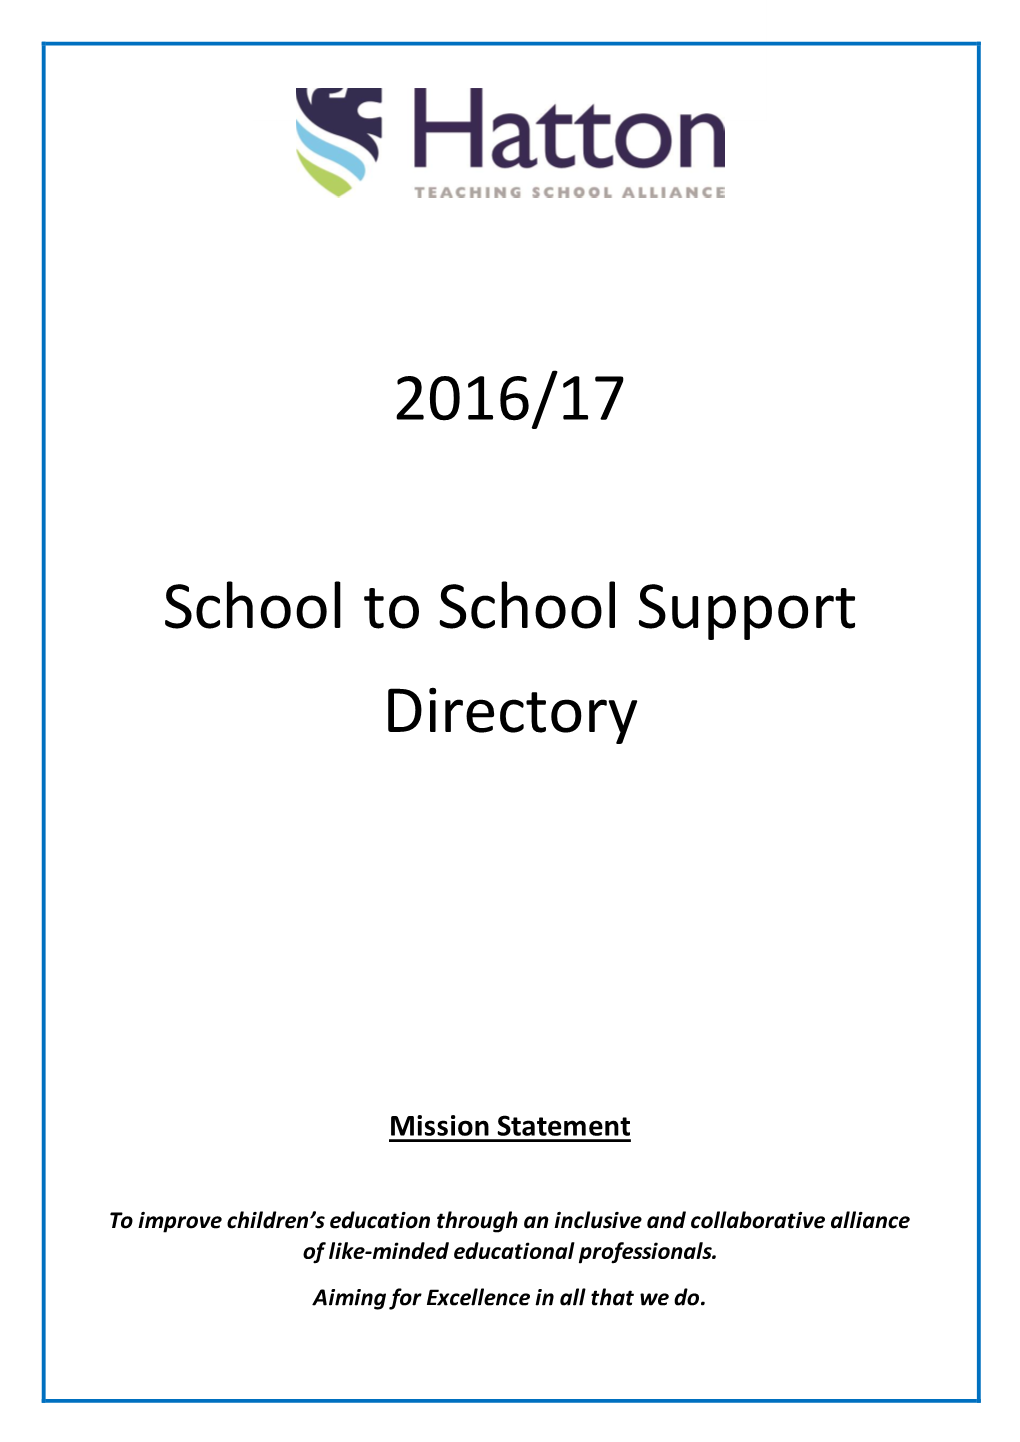 2016/17 School to School Support Directory